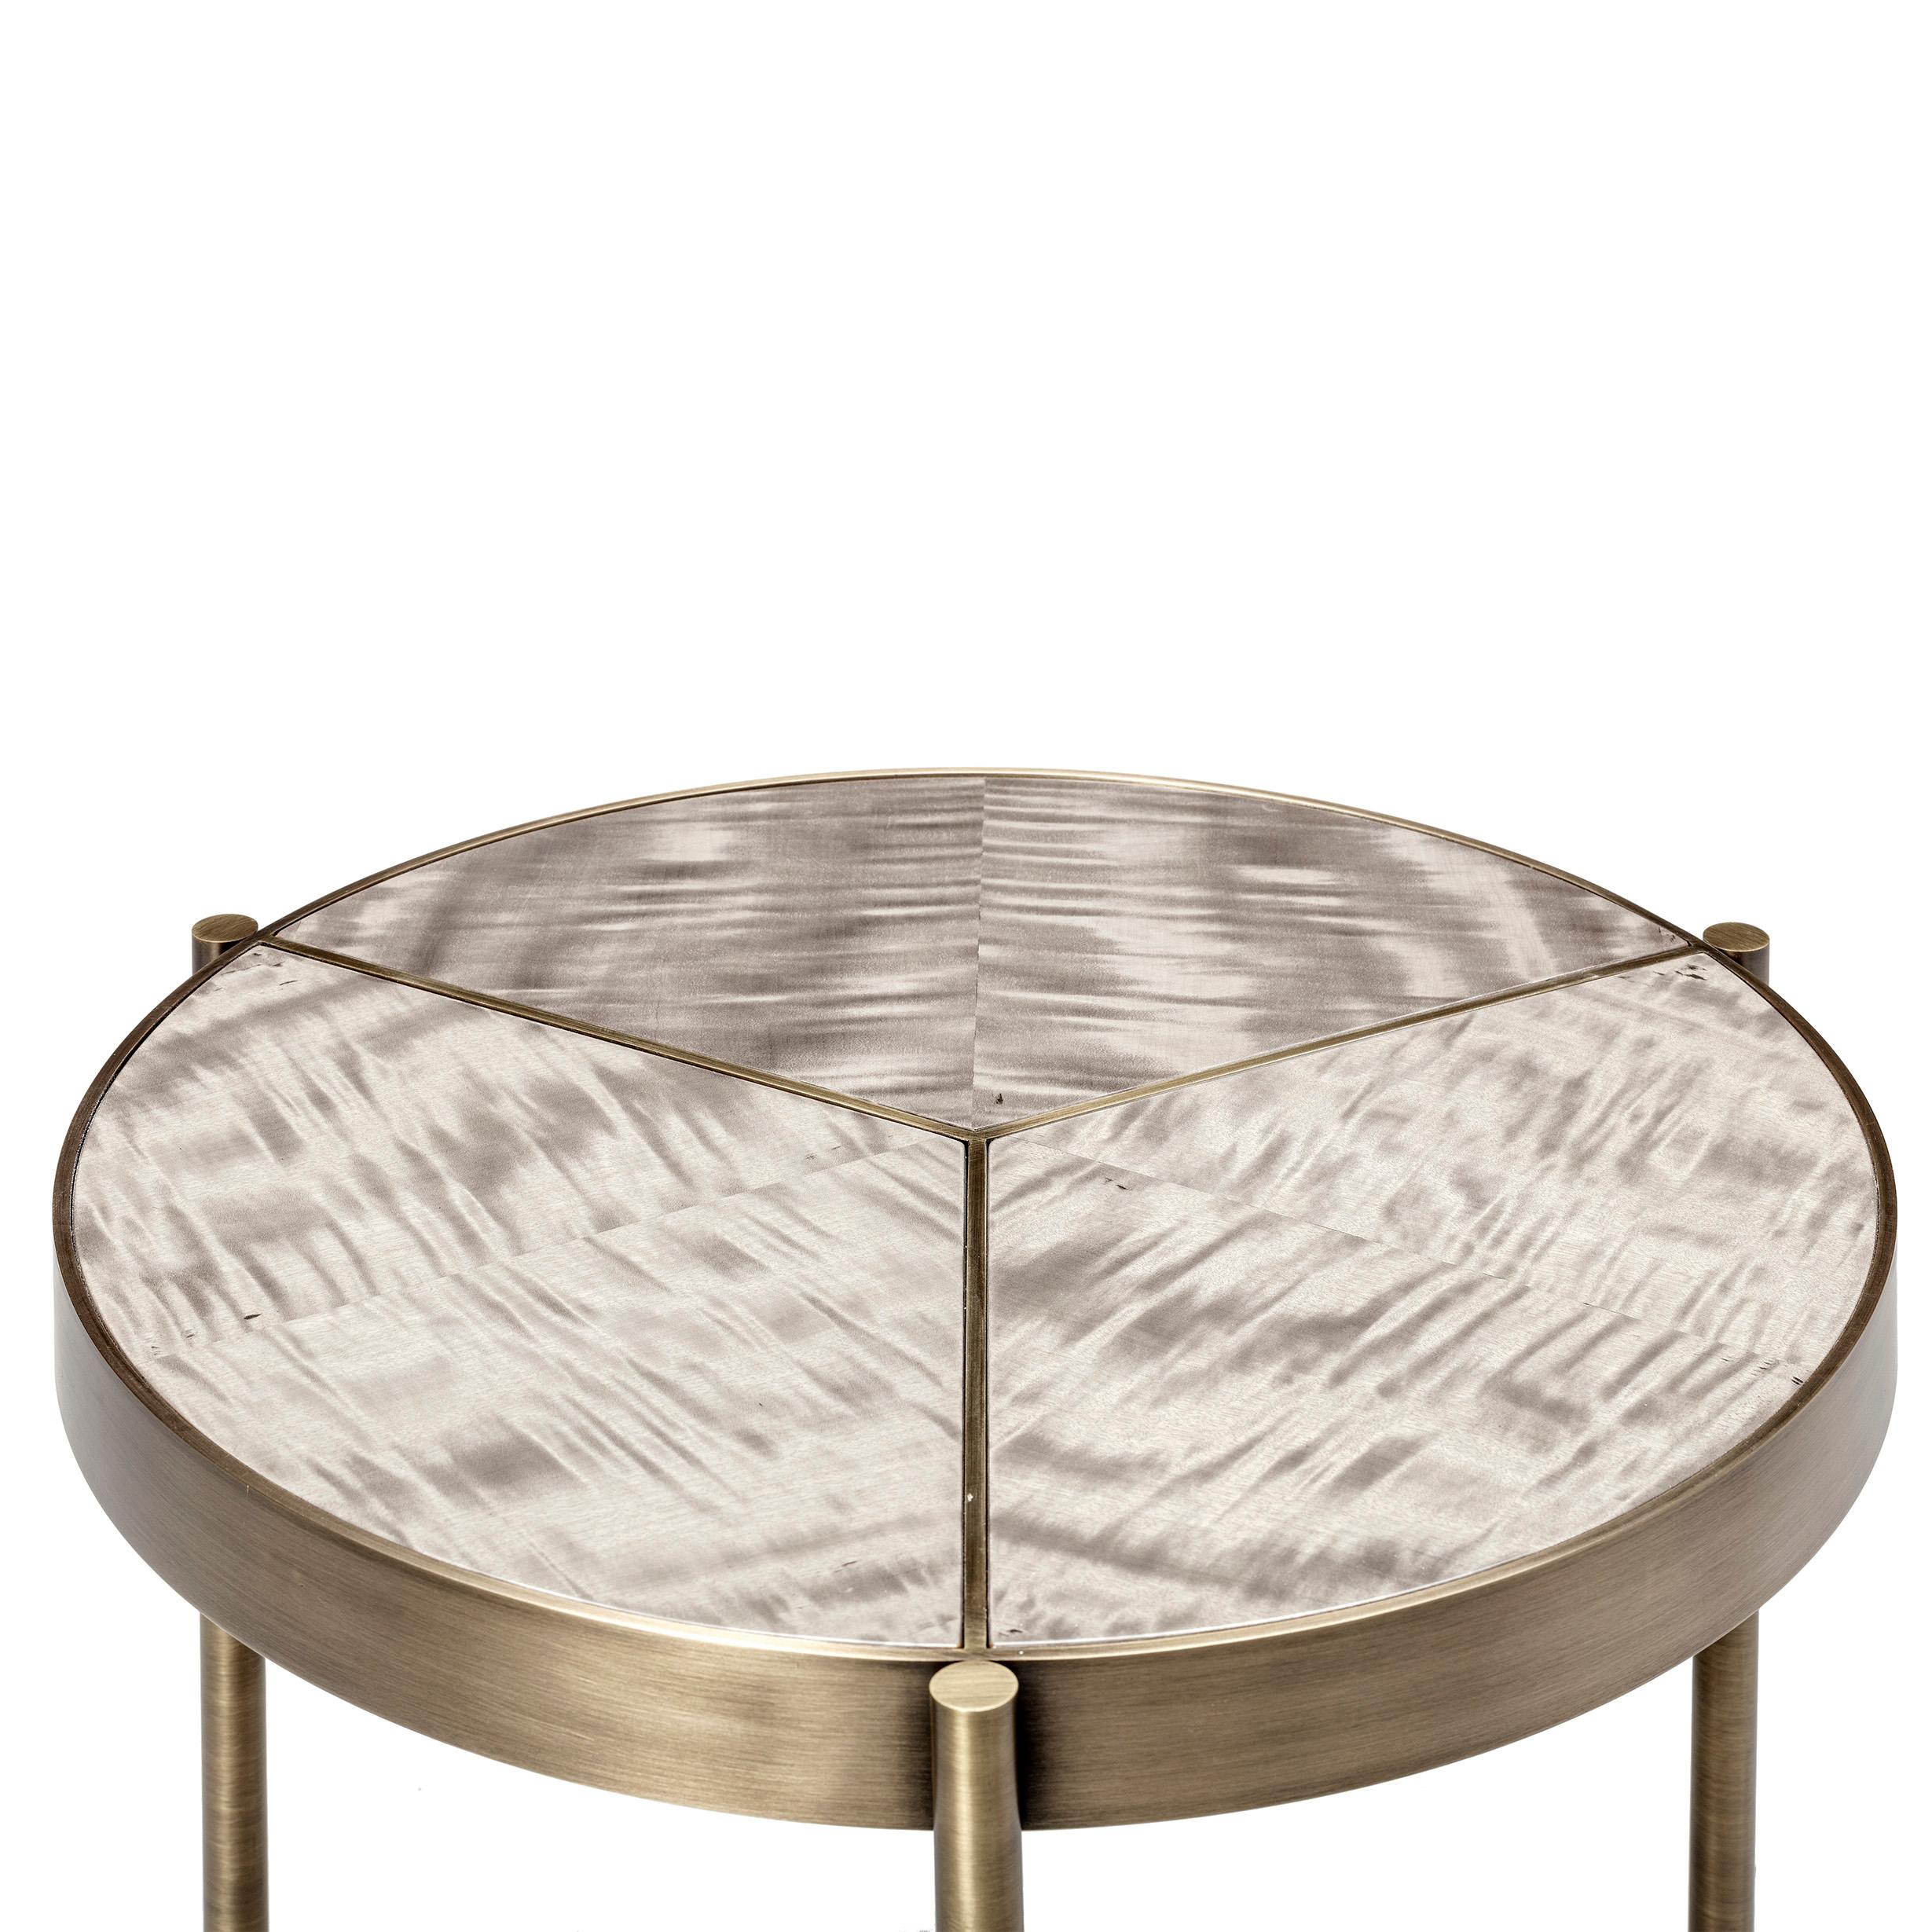 Table d'appoint Ray, en bronze et plateau en marbre VITA, faite à la main par Duistt

La table d'appoint ray est une combinaison d'élégance et de polyvalence. ses trois rayons délicats confinent la division au plateau de la table, permettant la